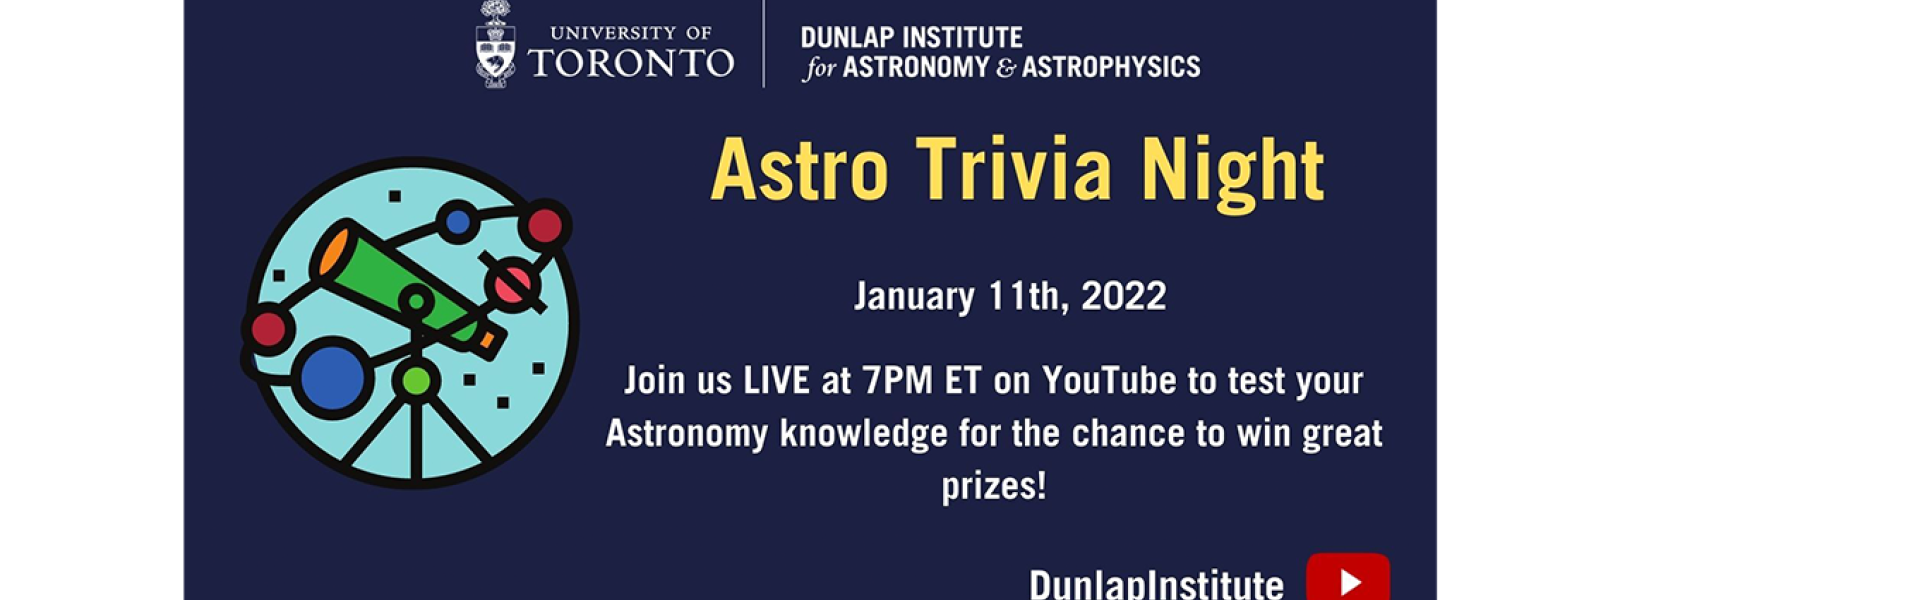 Astro Trivia Night - January 11th, 2022